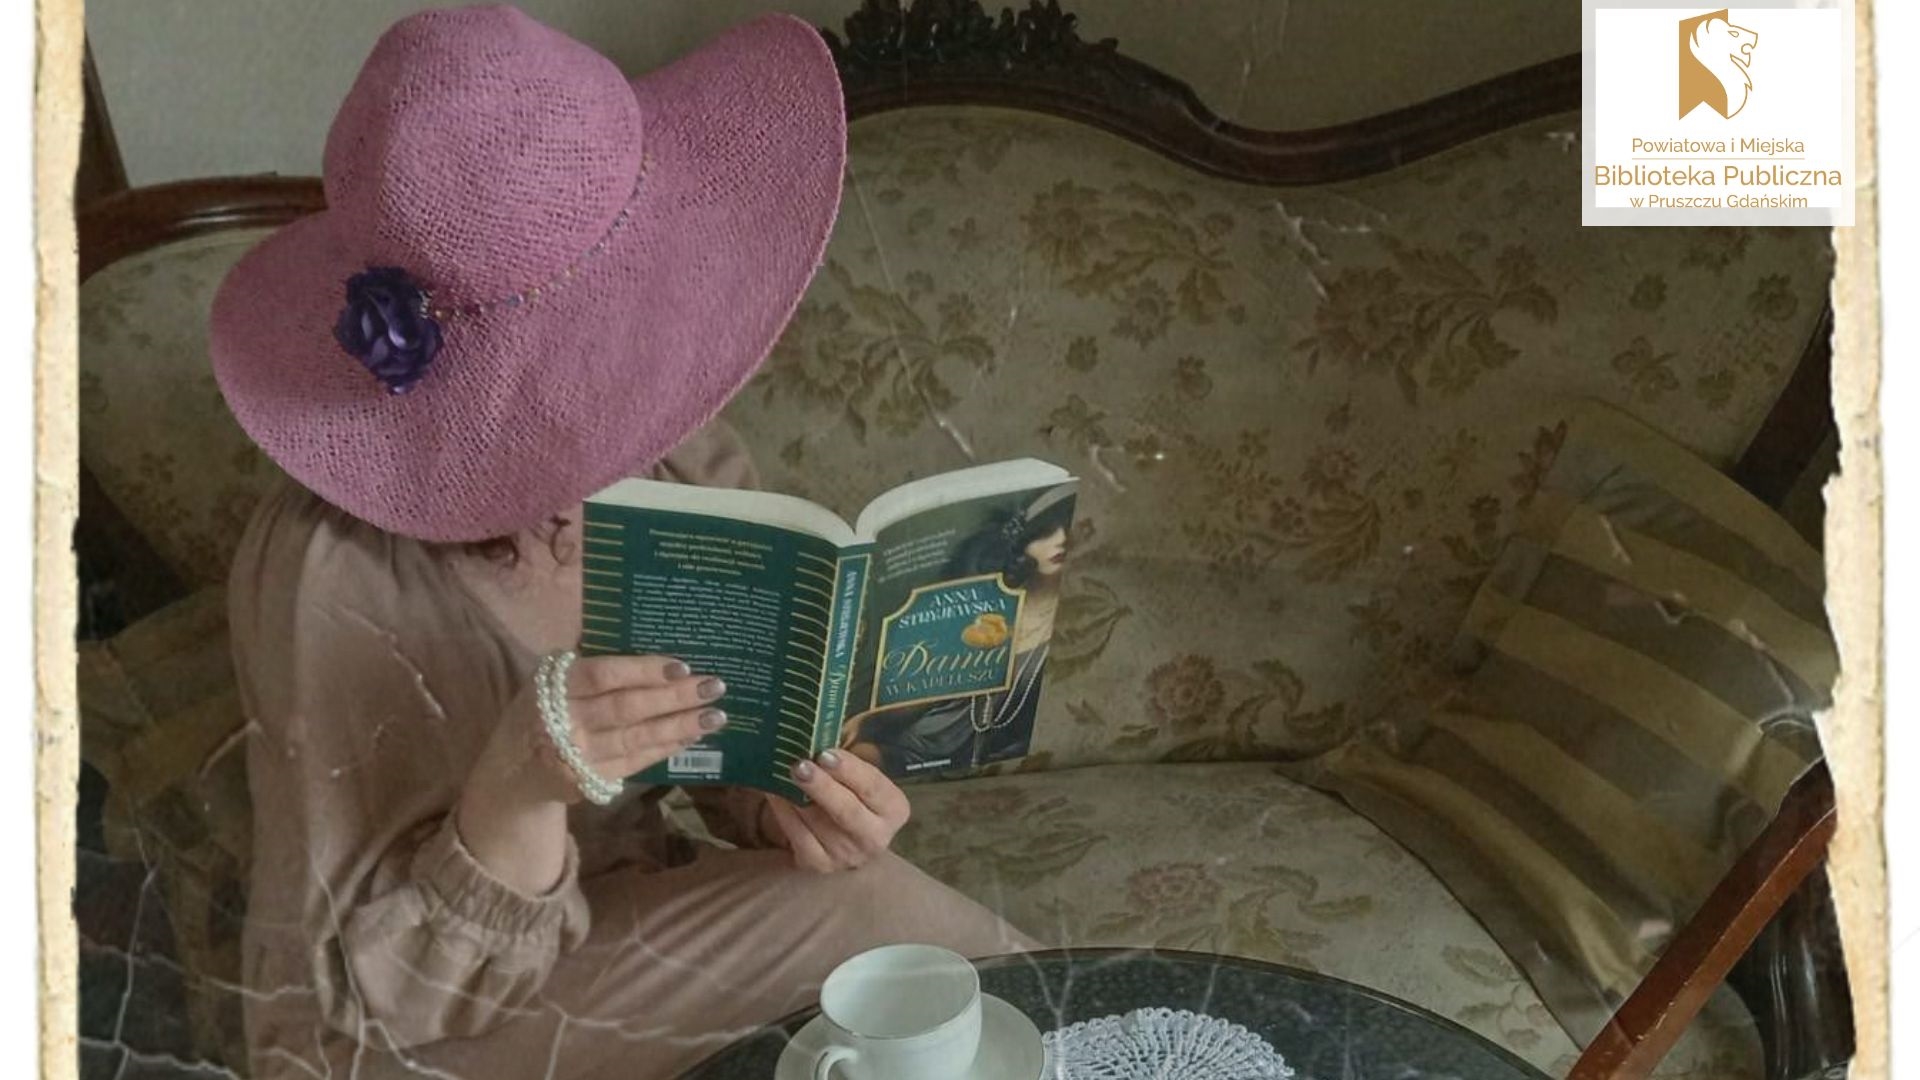 Kobieta w kapeluszu siedzi na antycznej sofie, w ręku trzyma otwartą książkę